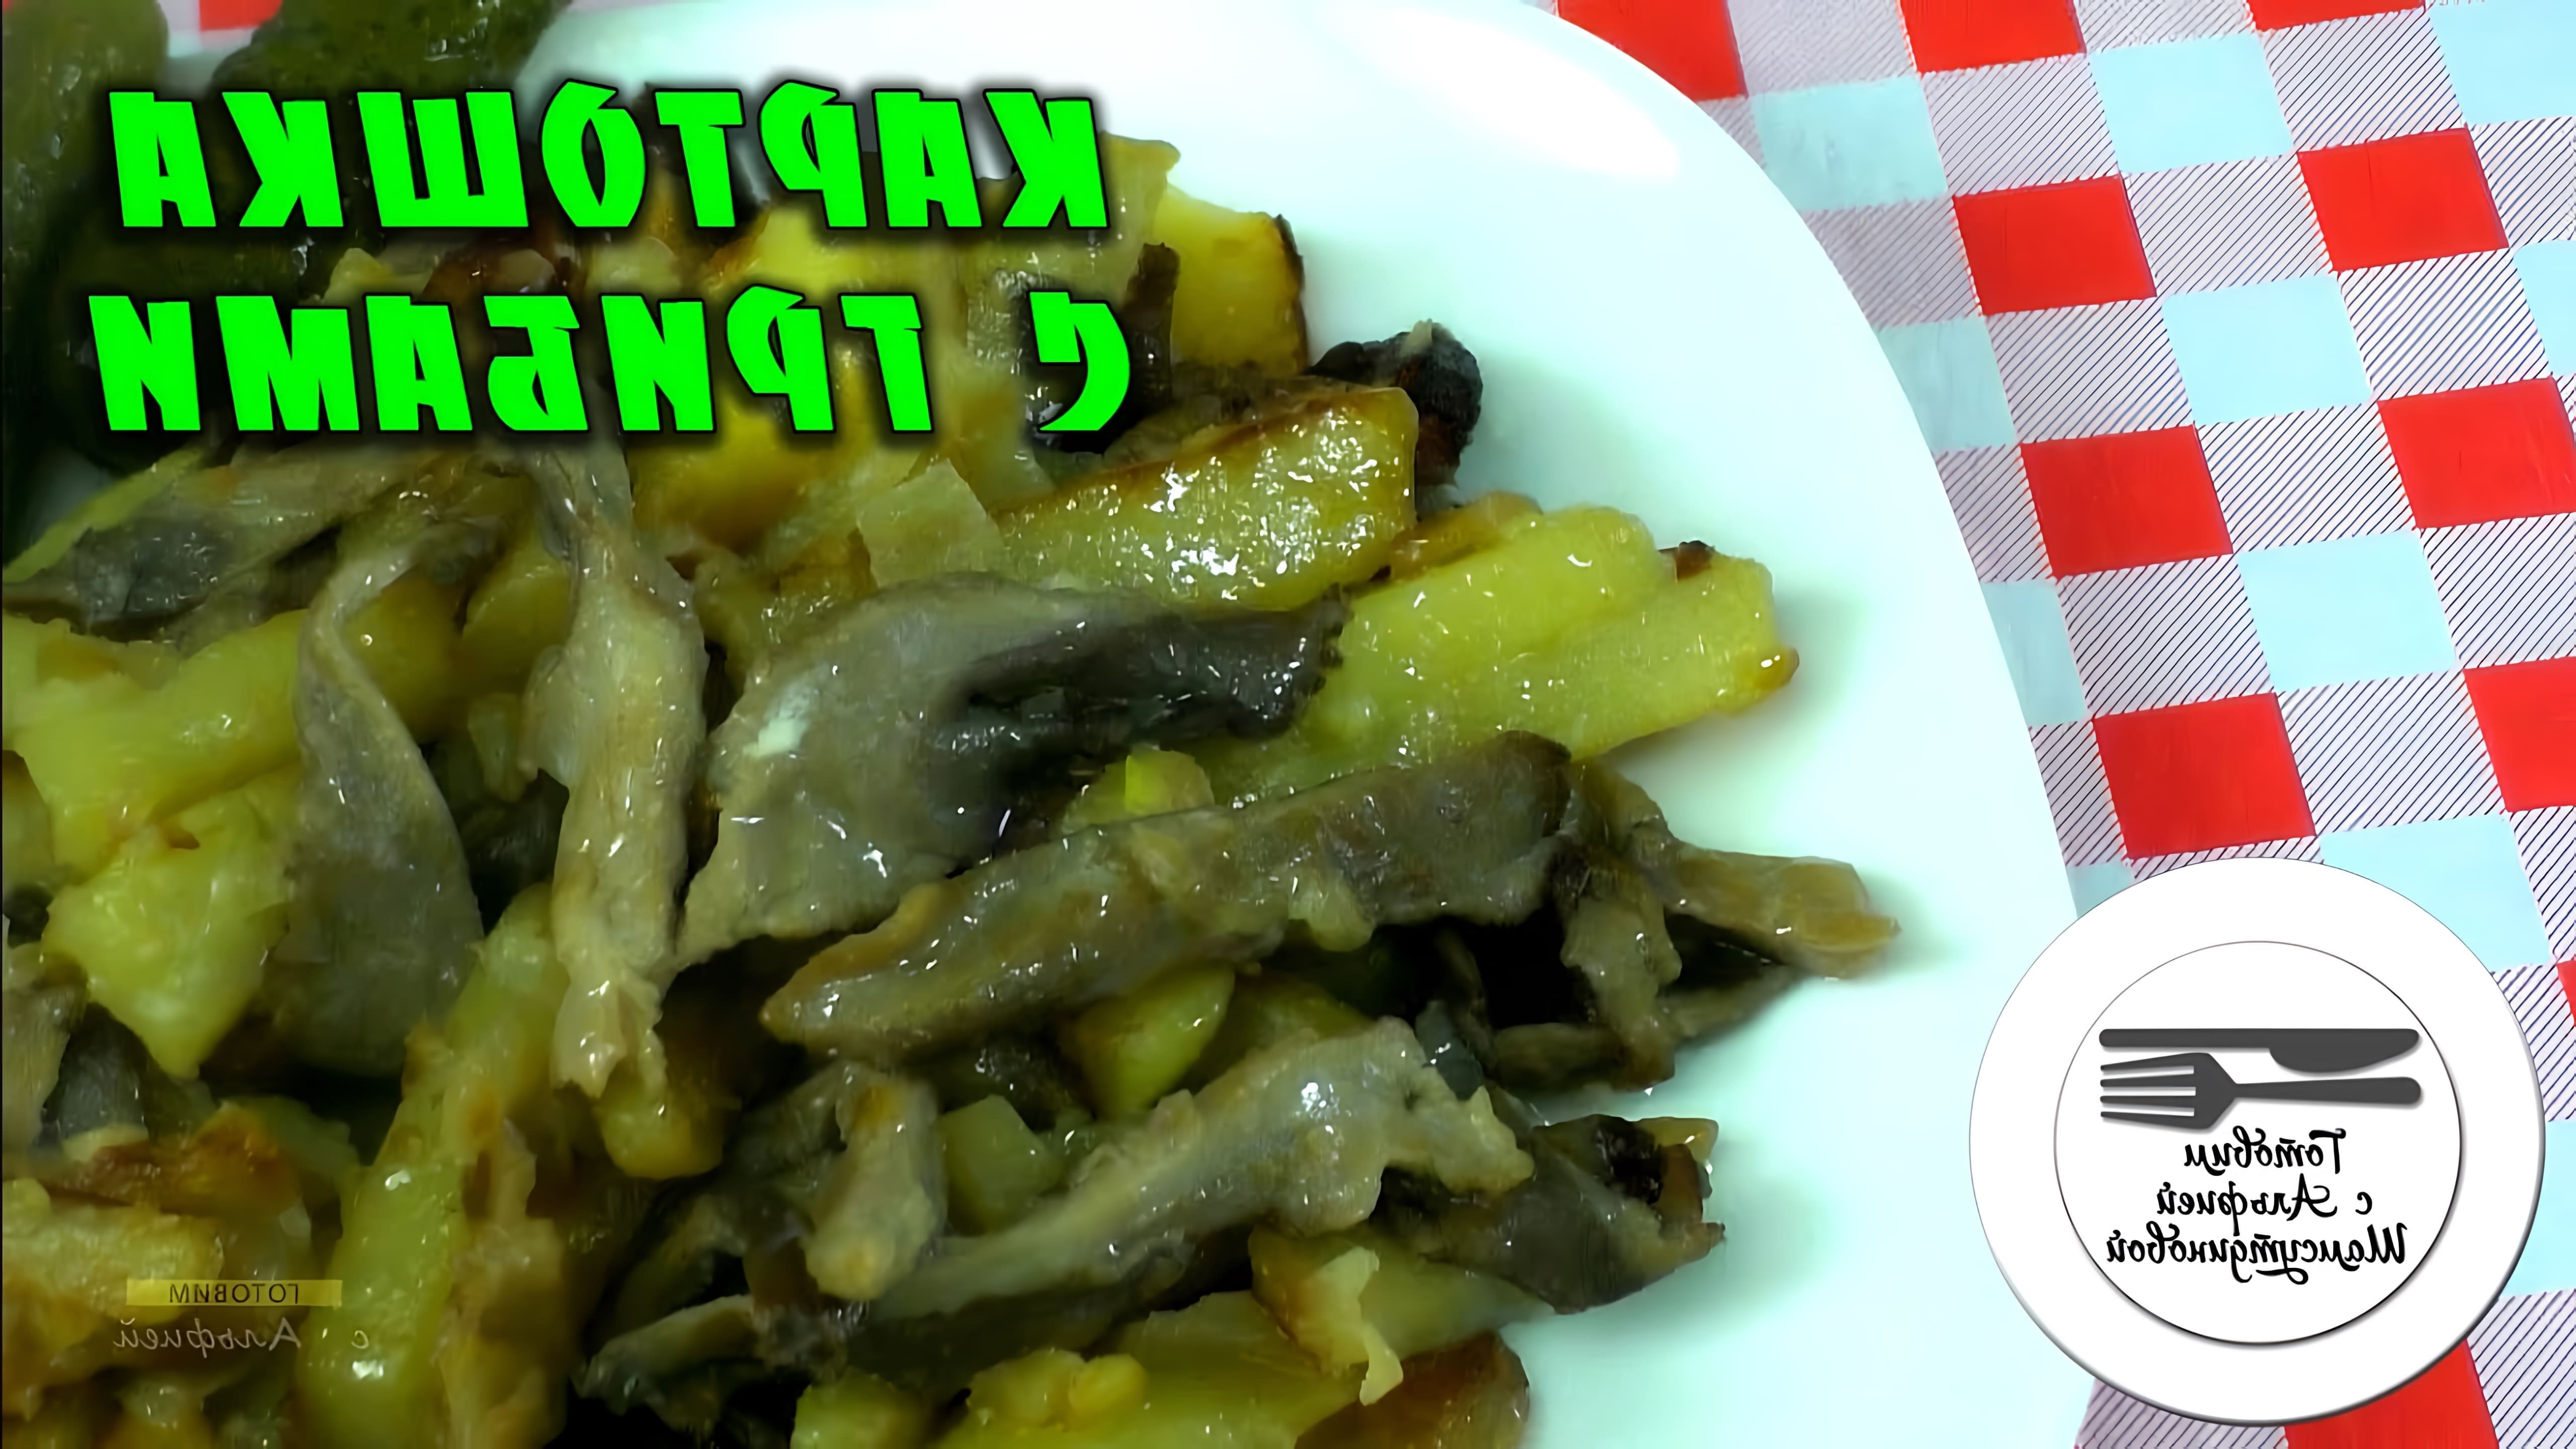 В этом видео демонстрируется рецепт приготовления жареных вешенок с картофелем и сметаной